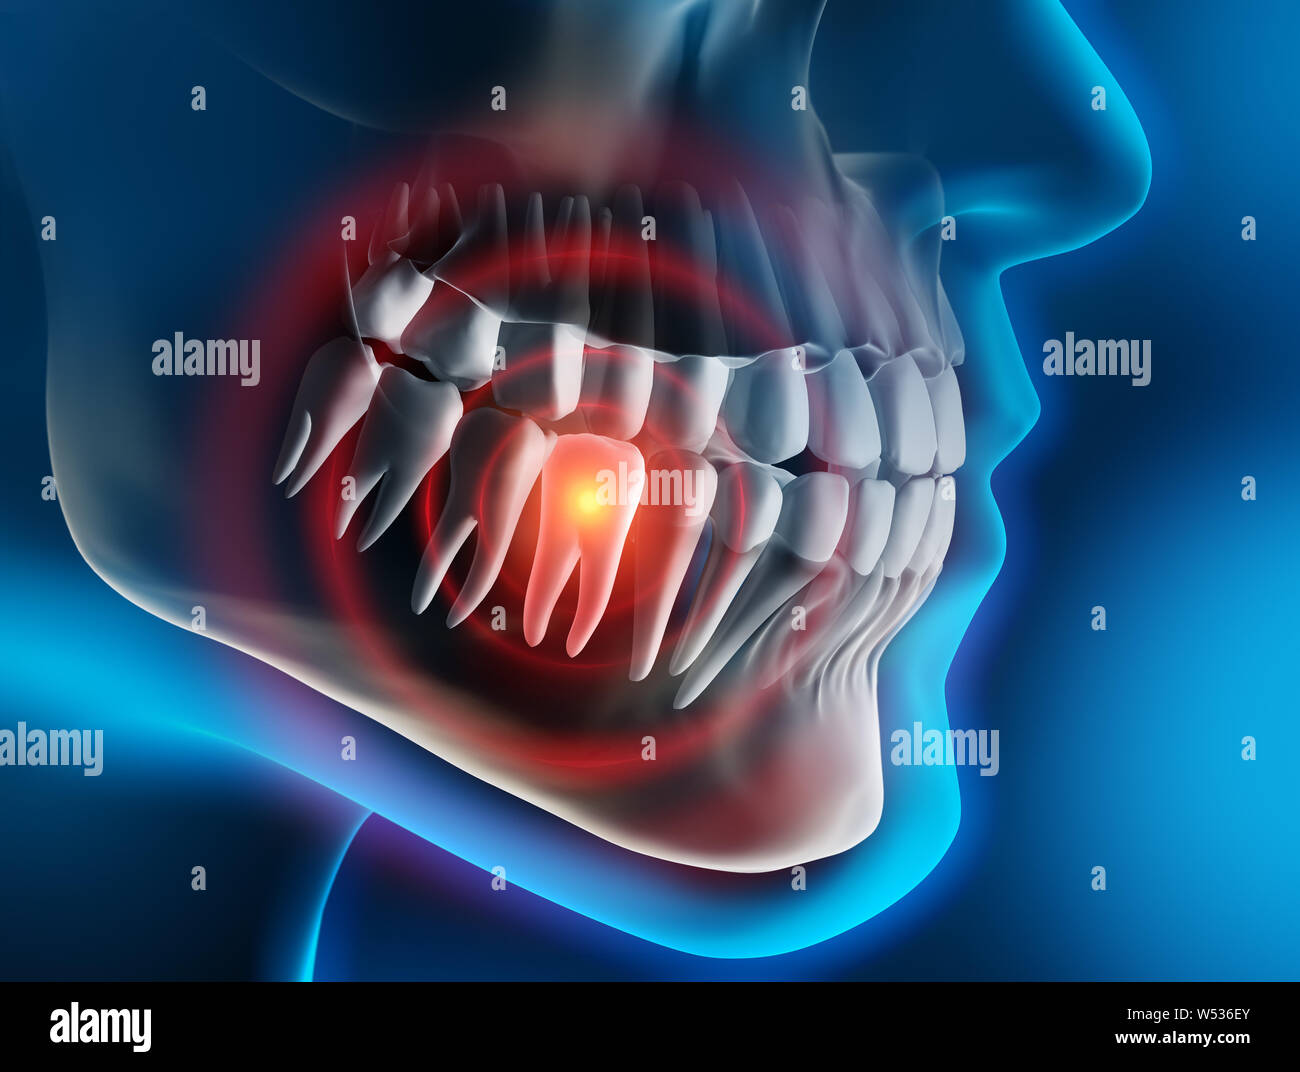 La douleur dentaire lourd - 3D illustration Banque D'Images